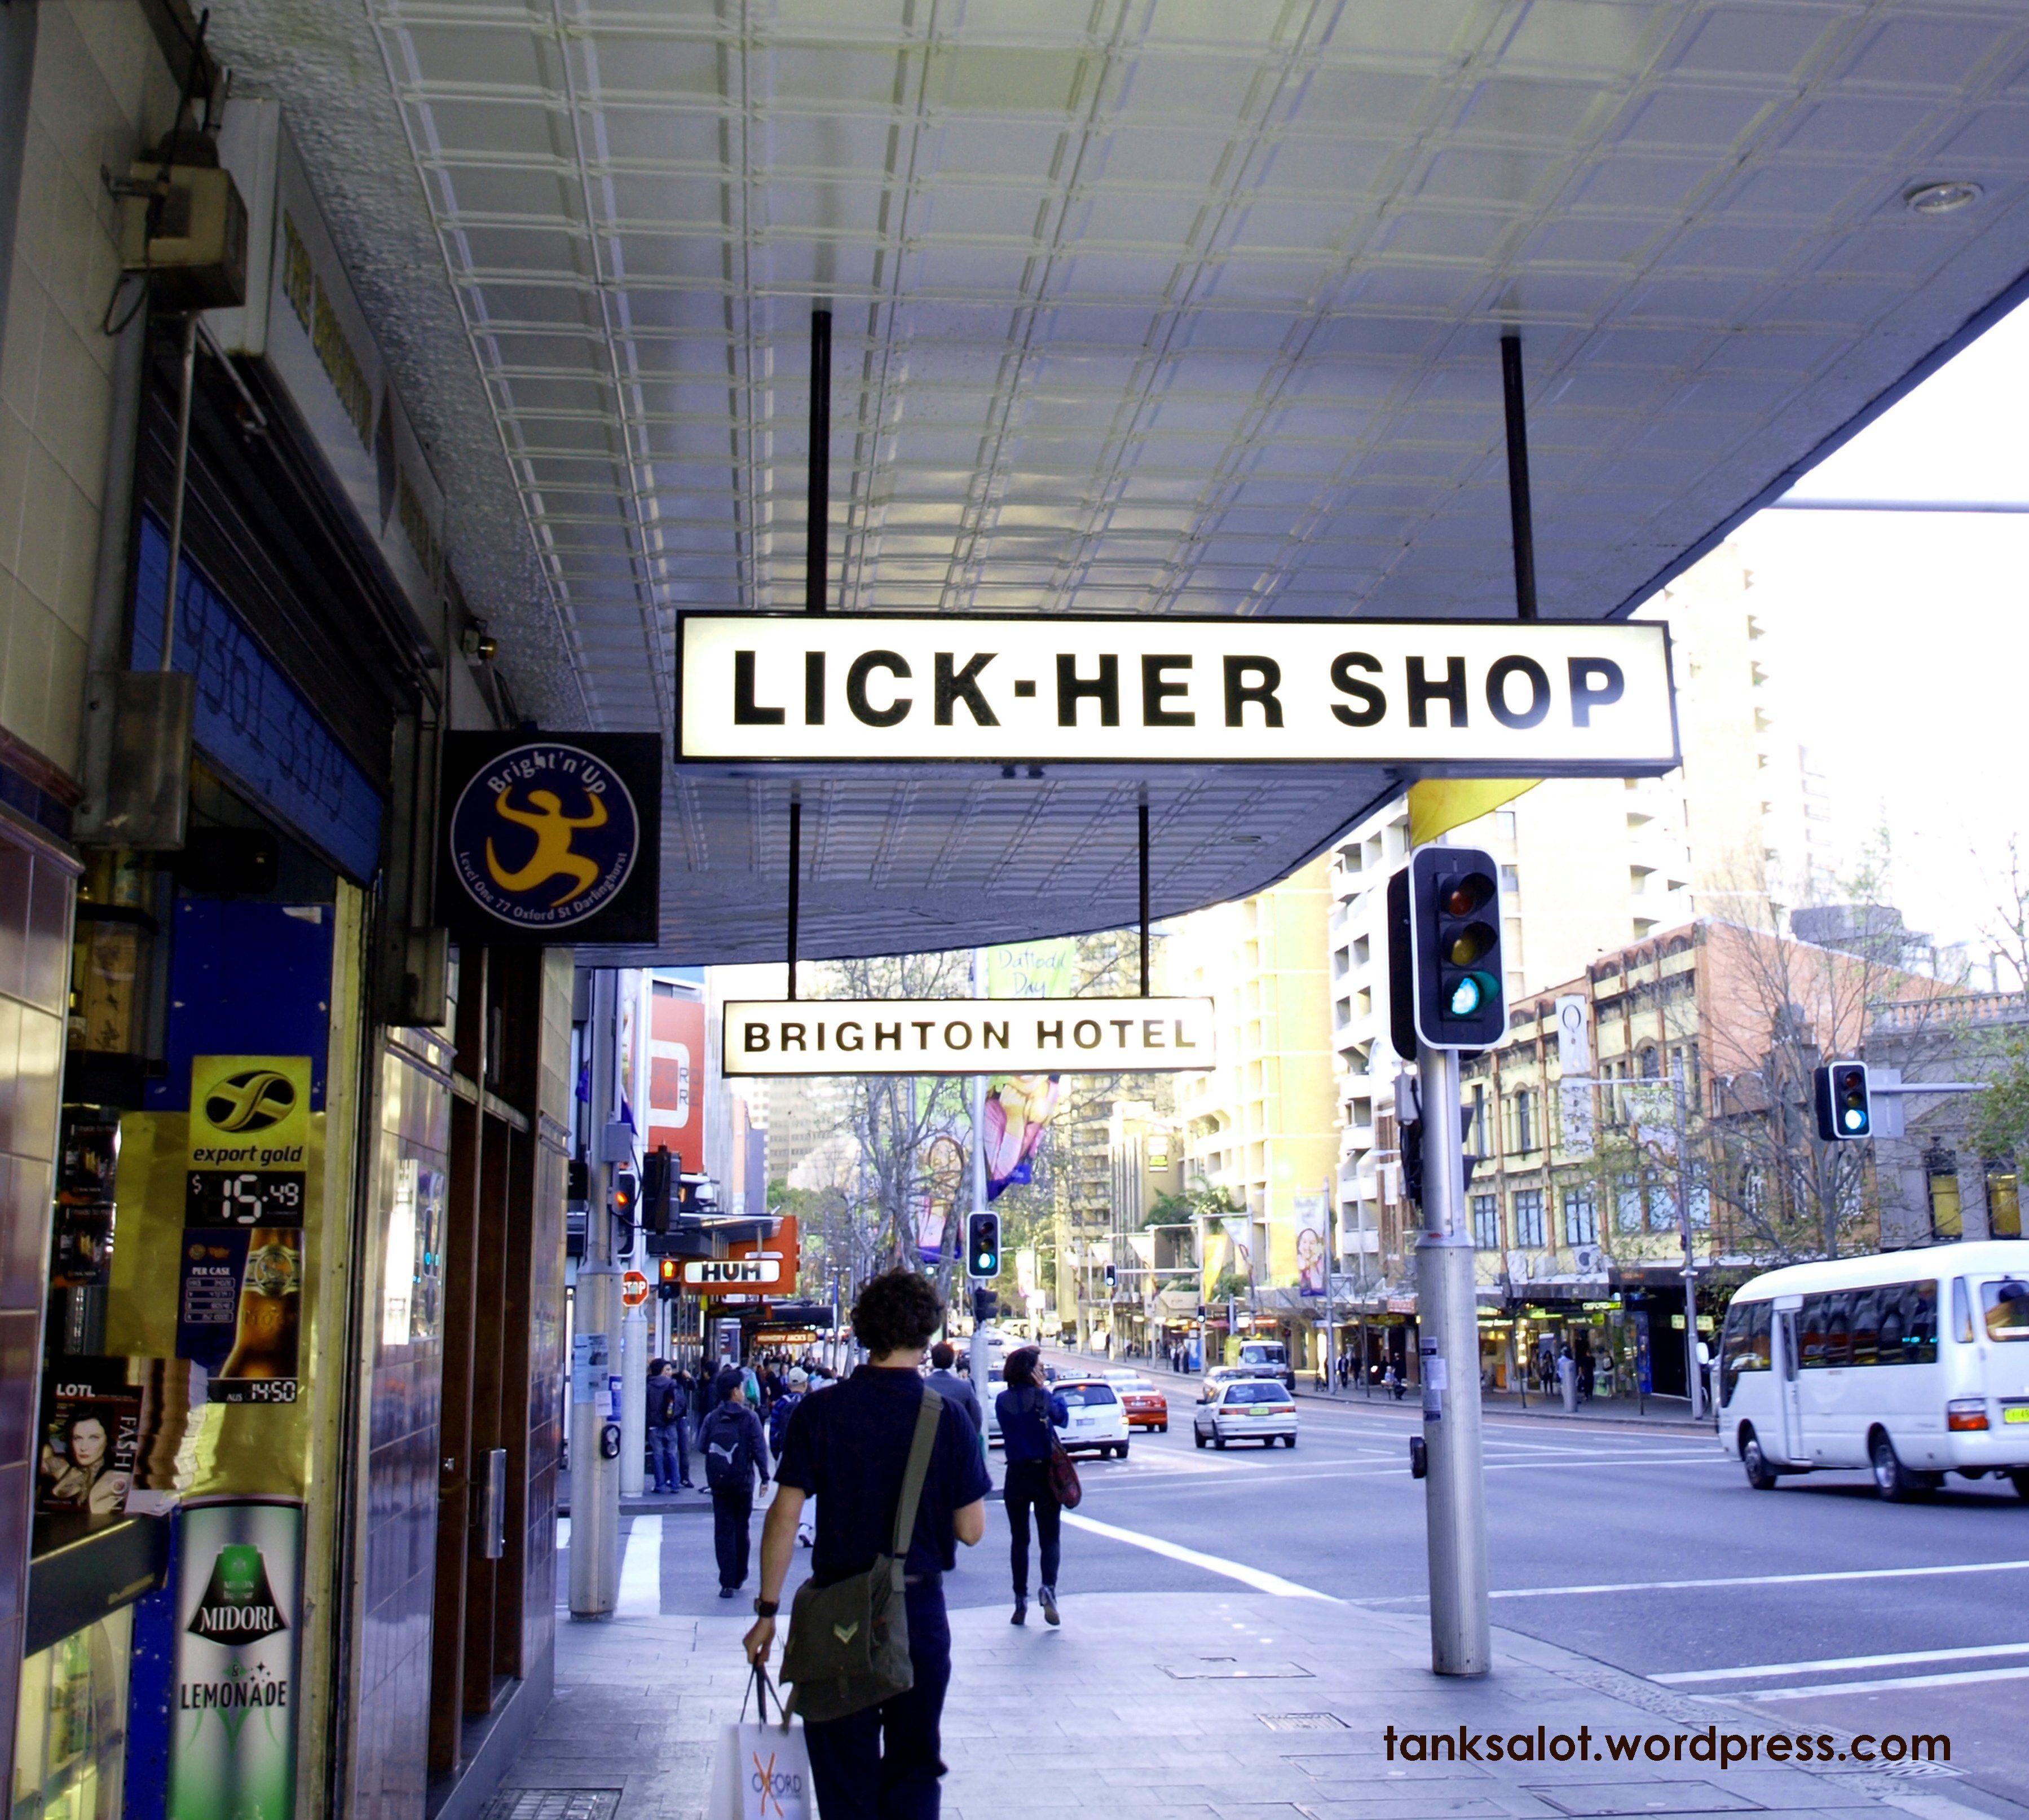 Lick her shop